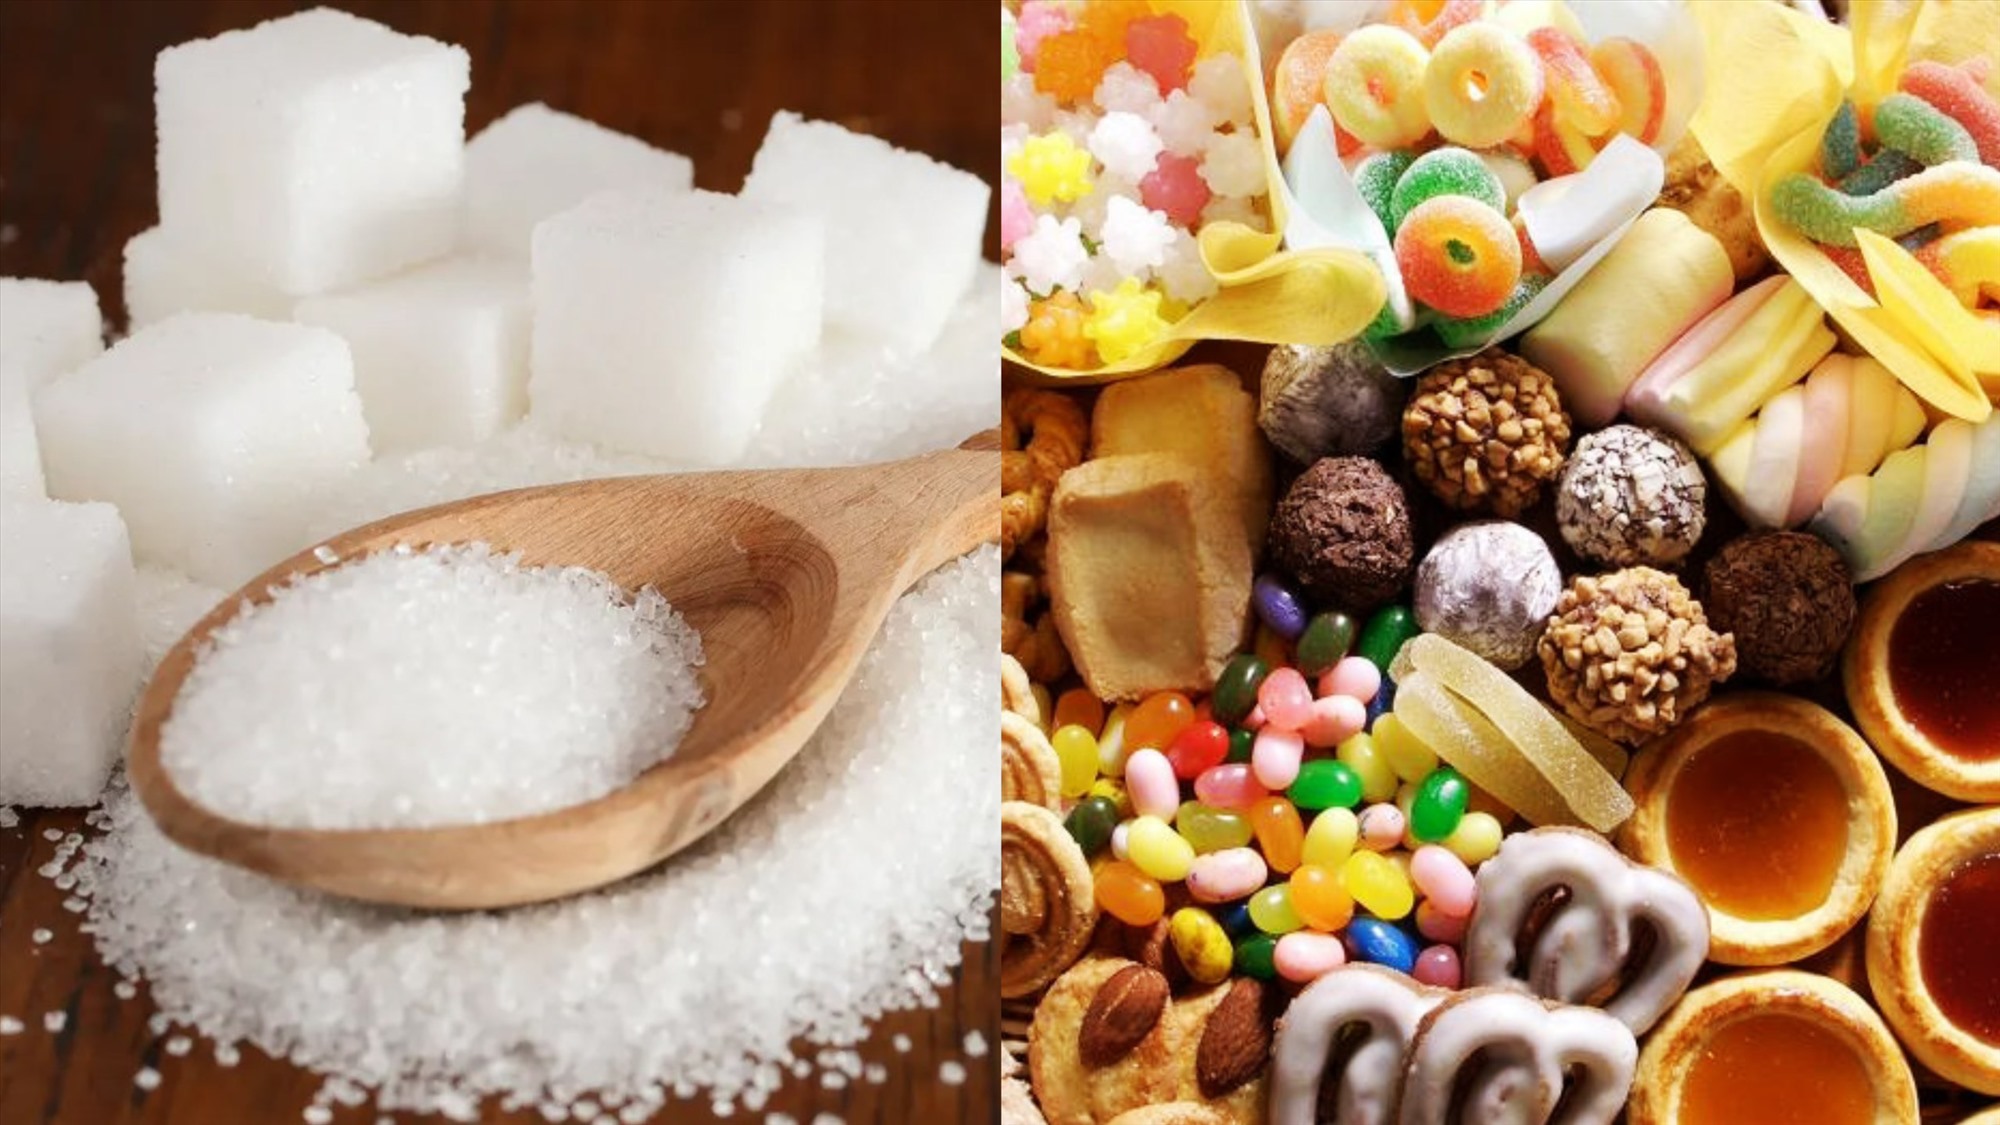 Tiêu thụ thực phẩm nhiều đường có thể gây hại cho cơ thể. Ảnh đồ họa: Minh Hà